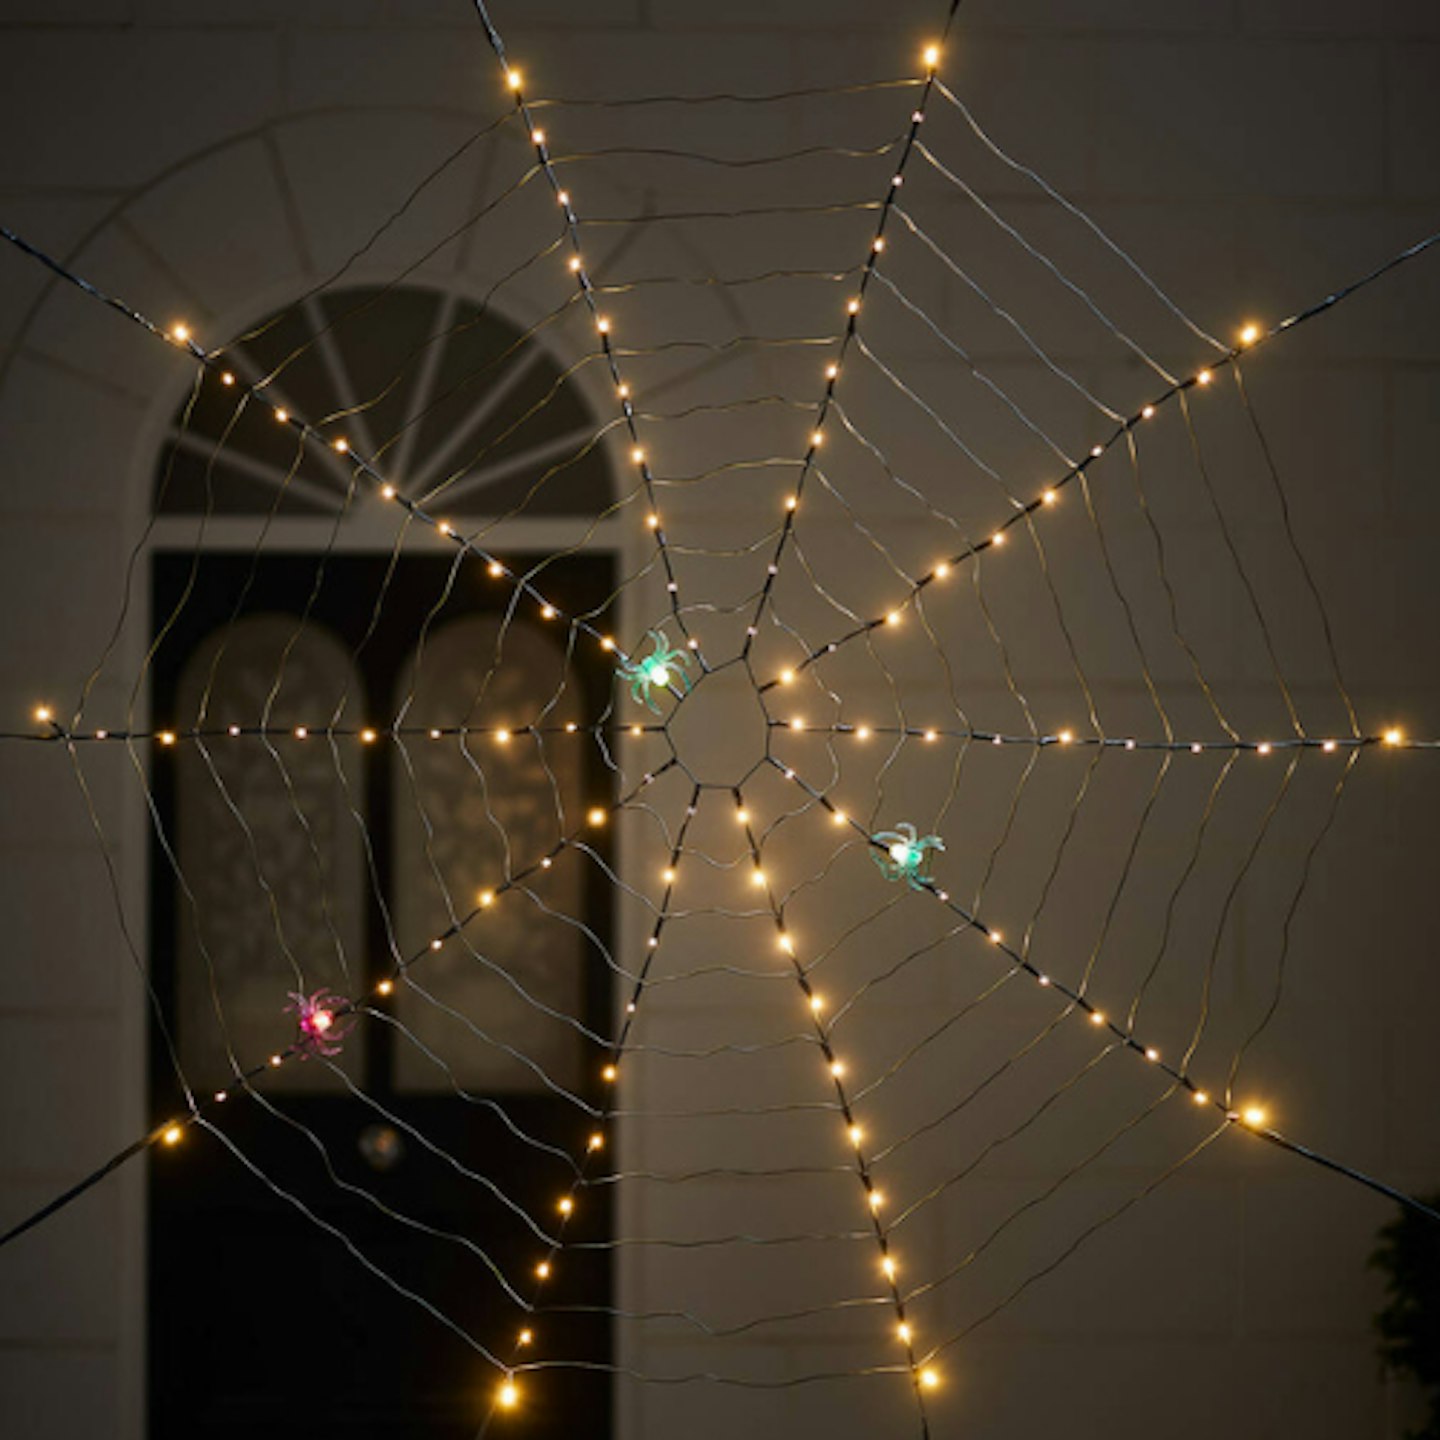 Lights4fun Illuminated Spider Web Halloween Decoration